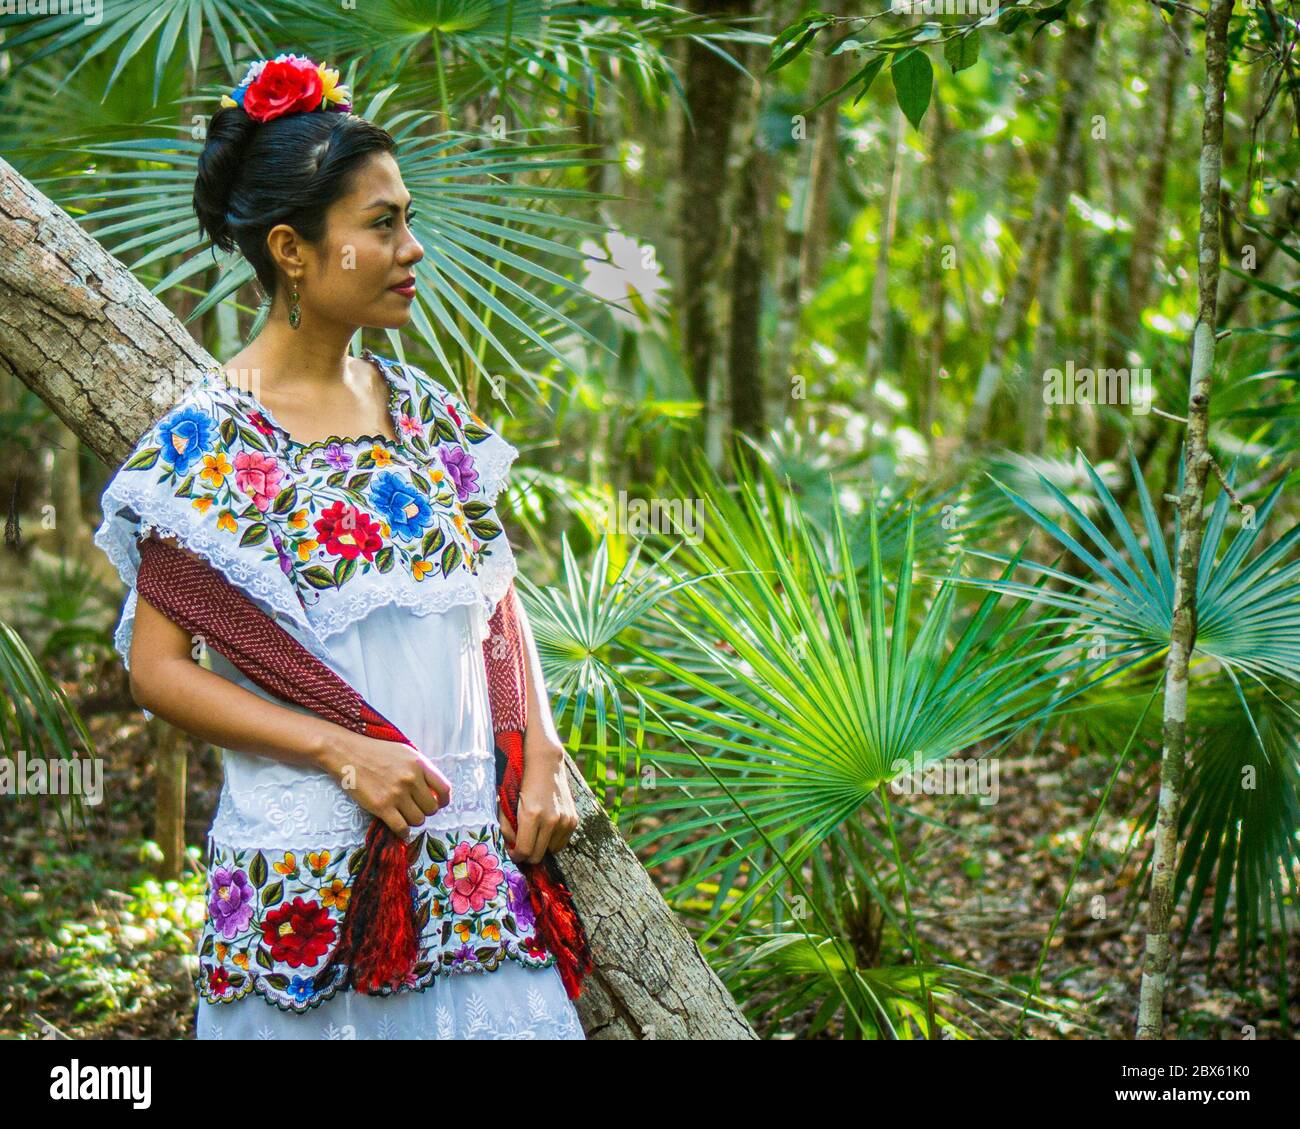 Tulum, Quintana Roo, Mexique- février 24,2020 : une belle femme mexicaine qui attend dans la jungle dans sa robe de huipil, costume traditionnel de Yucatán Banque D'Images